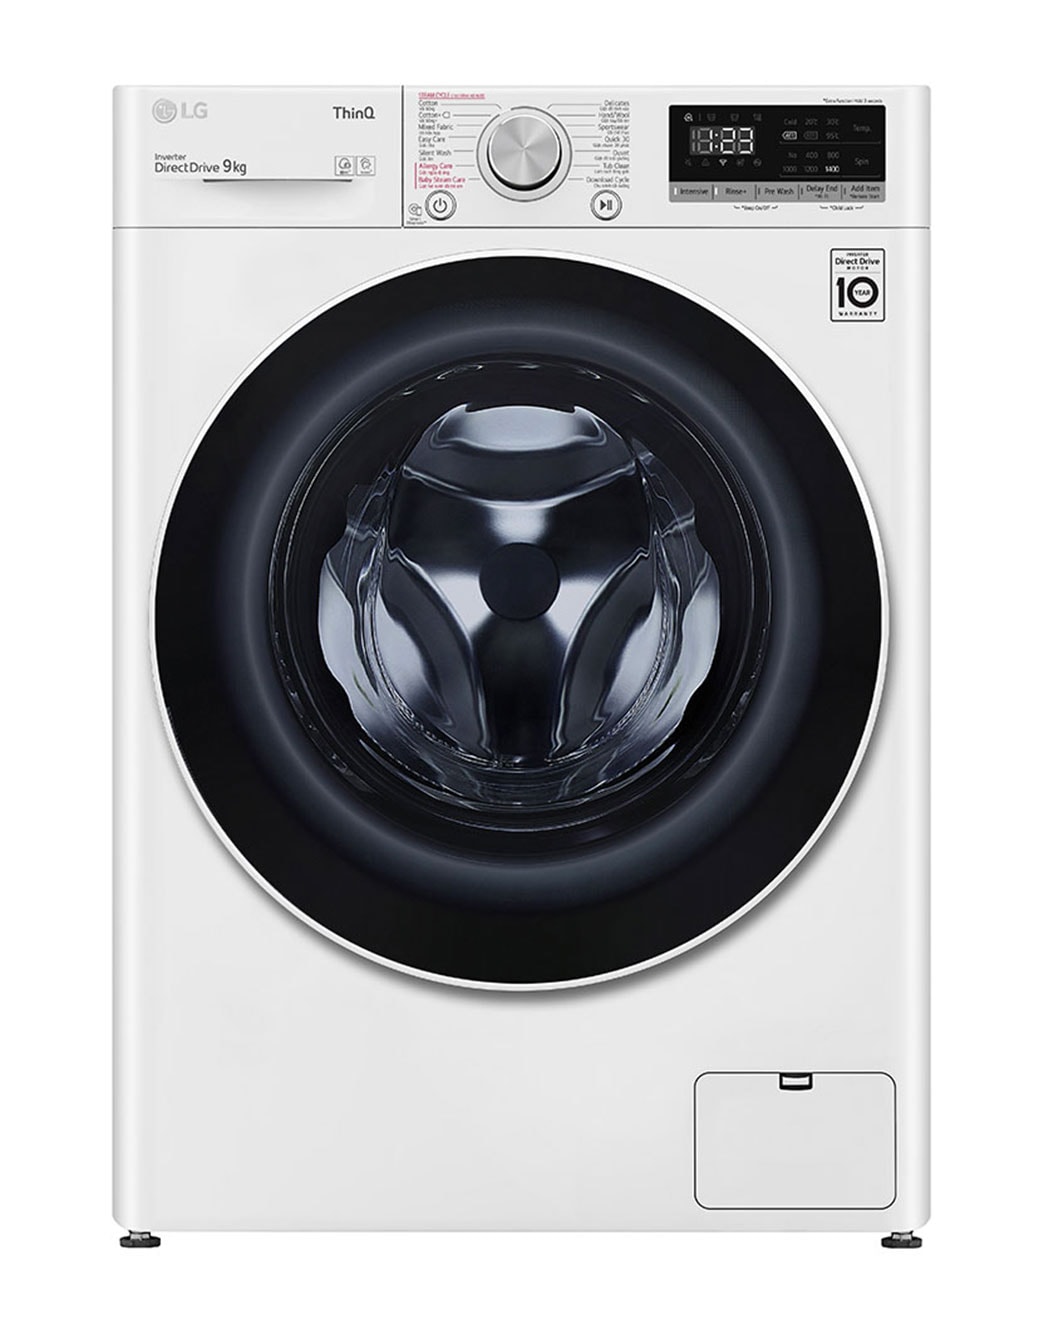 Máy giặt LG AI DD™: Khám phá sự hiện đại và tiện nghi với máy giặt LG AI DD™ thông minh. Ảnh minh họa sẽ giúp bạn hiểu rõ hơn về tính năng máy giặt này, đặc biệt là công nghệ AI DD™ độc quyền để bảo vệ và làm sạch quần áo của bạn một cách thông minh và mượt mà nhất.